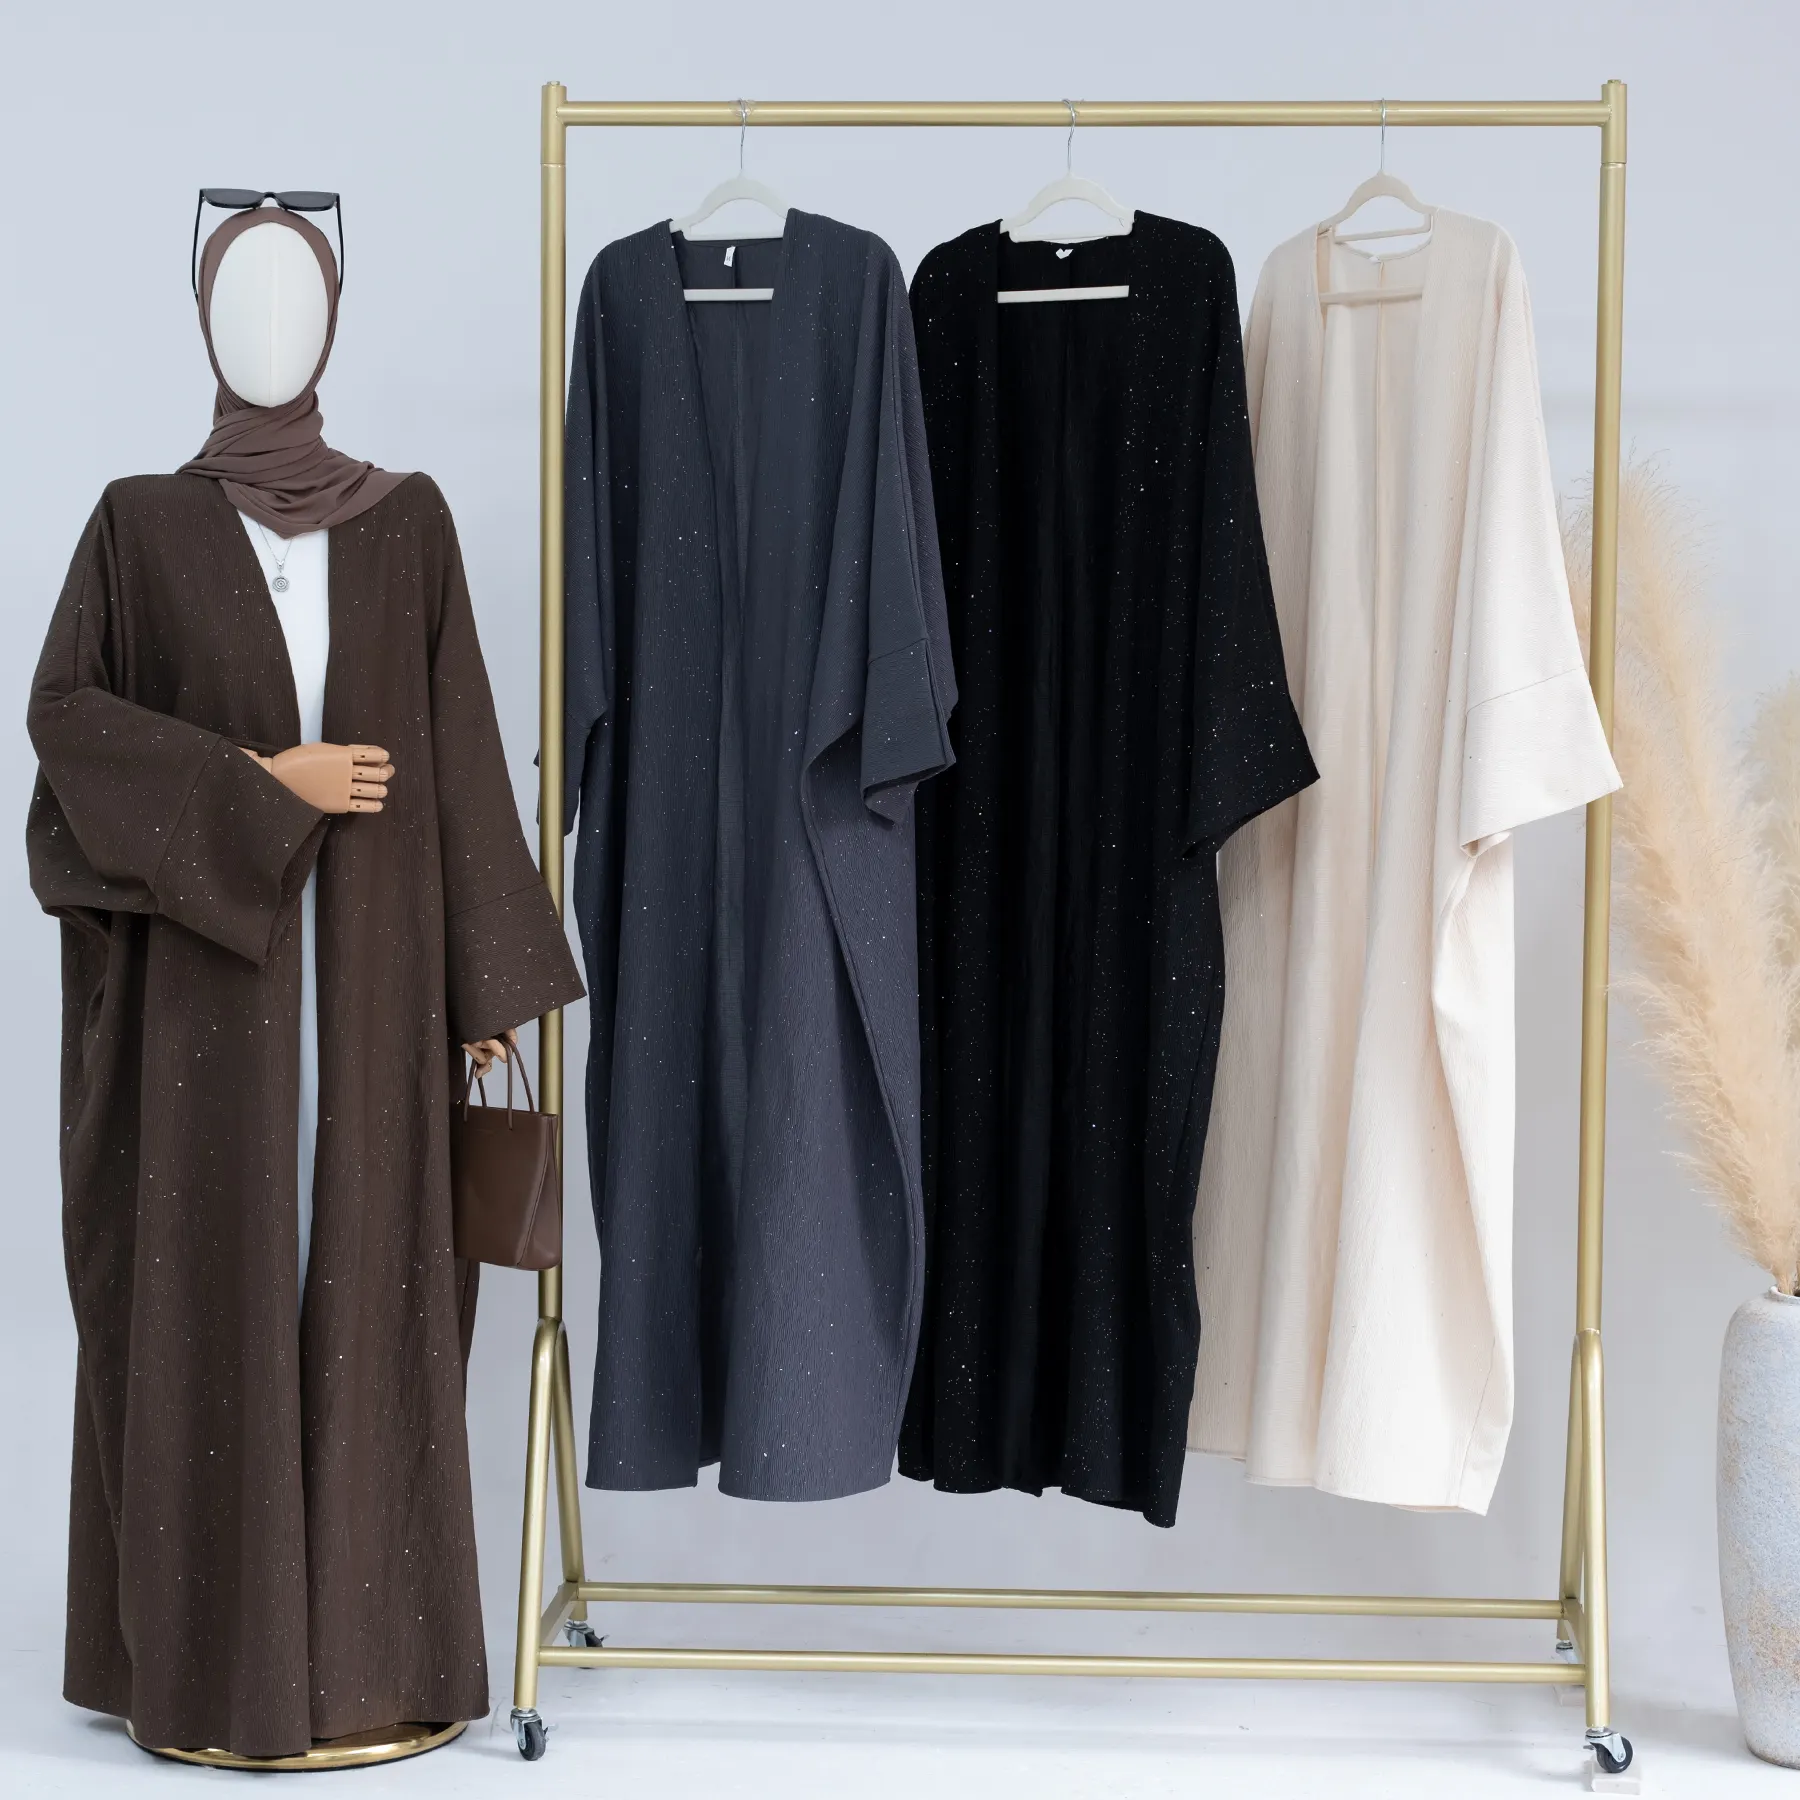 2023 Loriya новый осенне-зимний Dubai Abaya дизайн Исламская одежда для женщин мусульманская абайя толстый кардиган из полиэстера Abayas